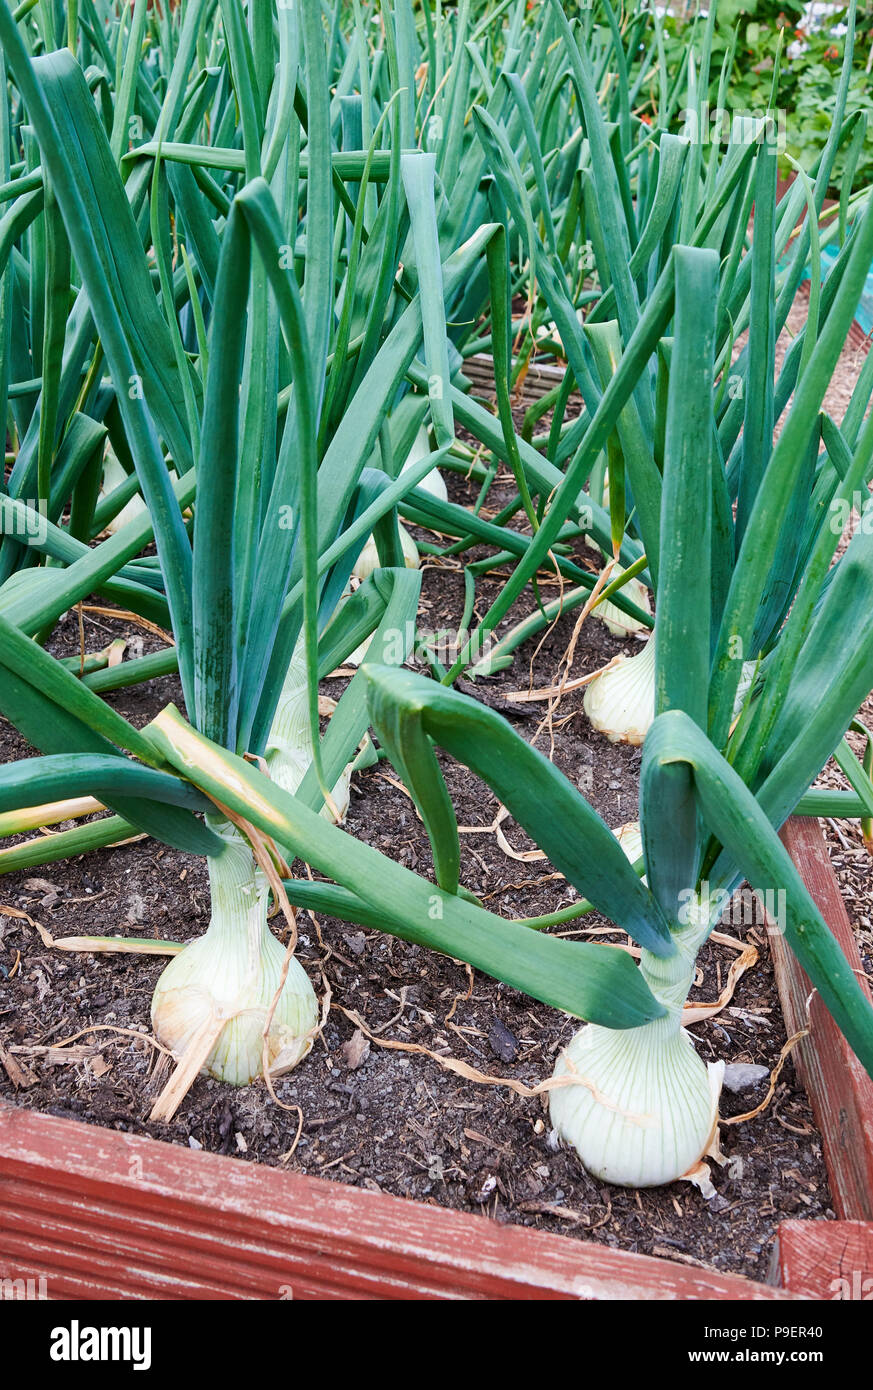 Un tipo de cebolla española, Ailsa Craig (Allium cepa "Ailsa Craig") se cultiva a partir de semillas y produce grandes cebollas que almacene y mantenga bien. Foto de stock